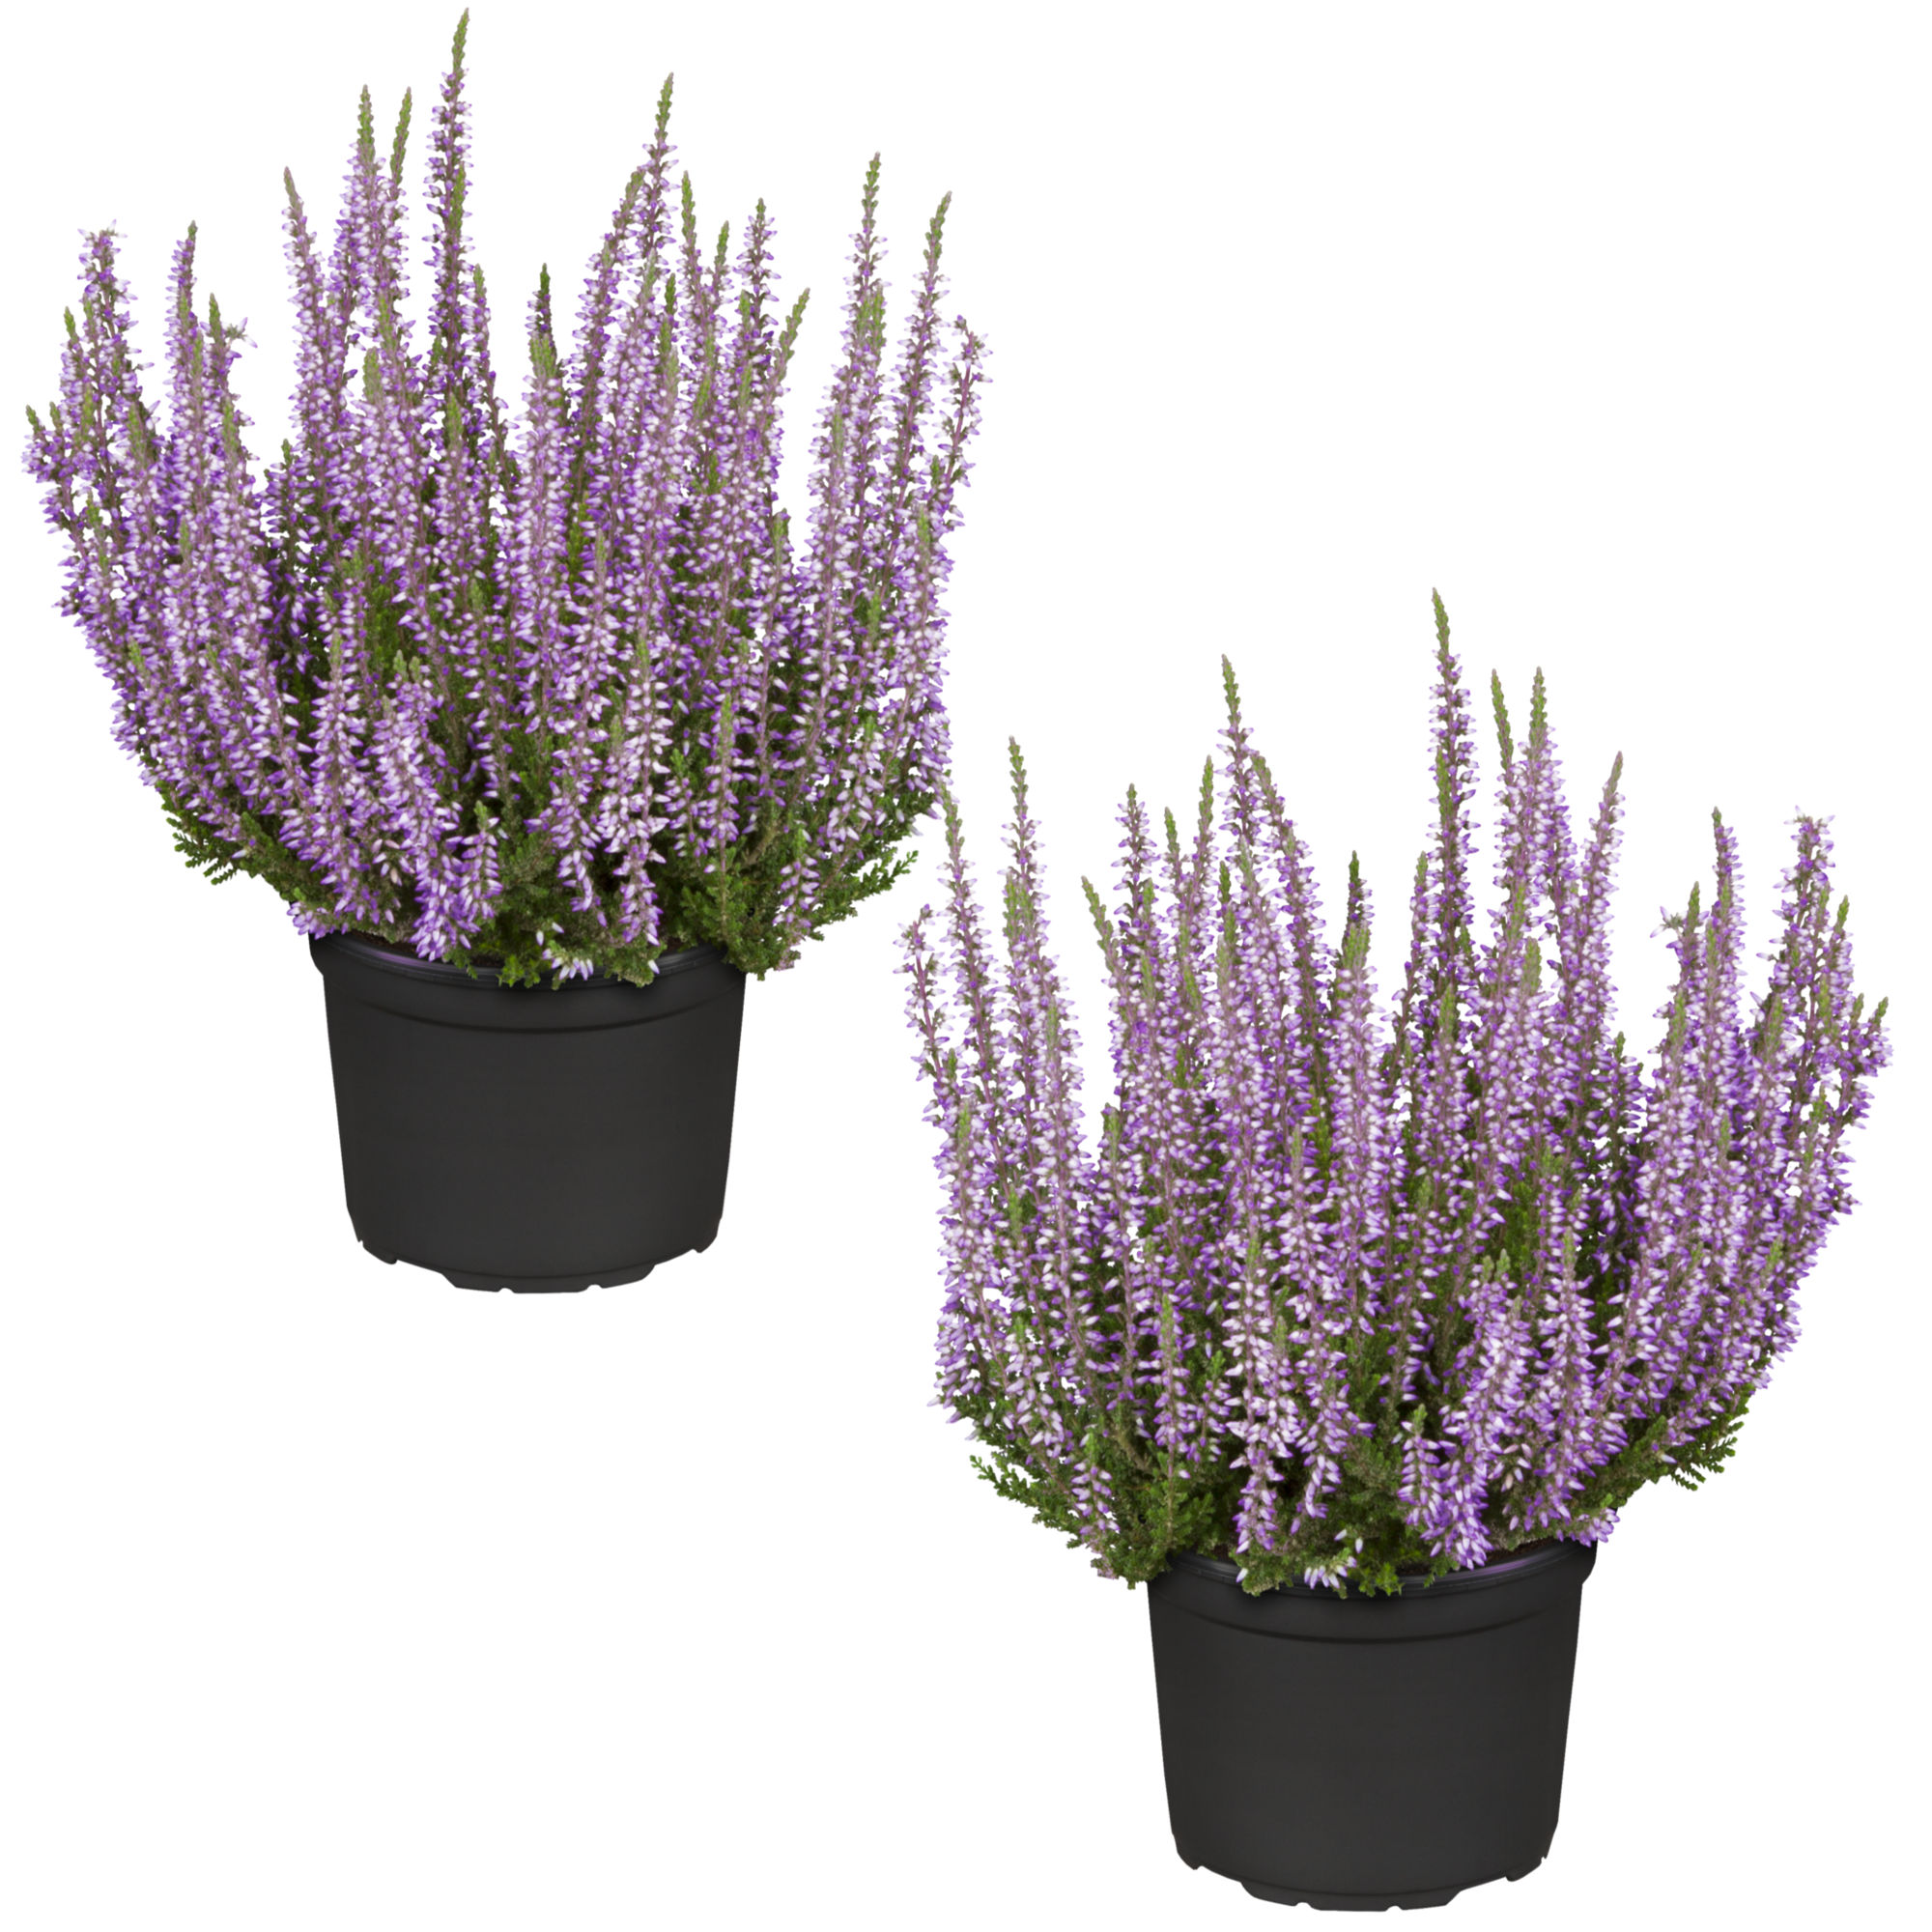 Knospenheide 'Gardengirls®' violett 12 cm Topf, 2er-Set + product picture